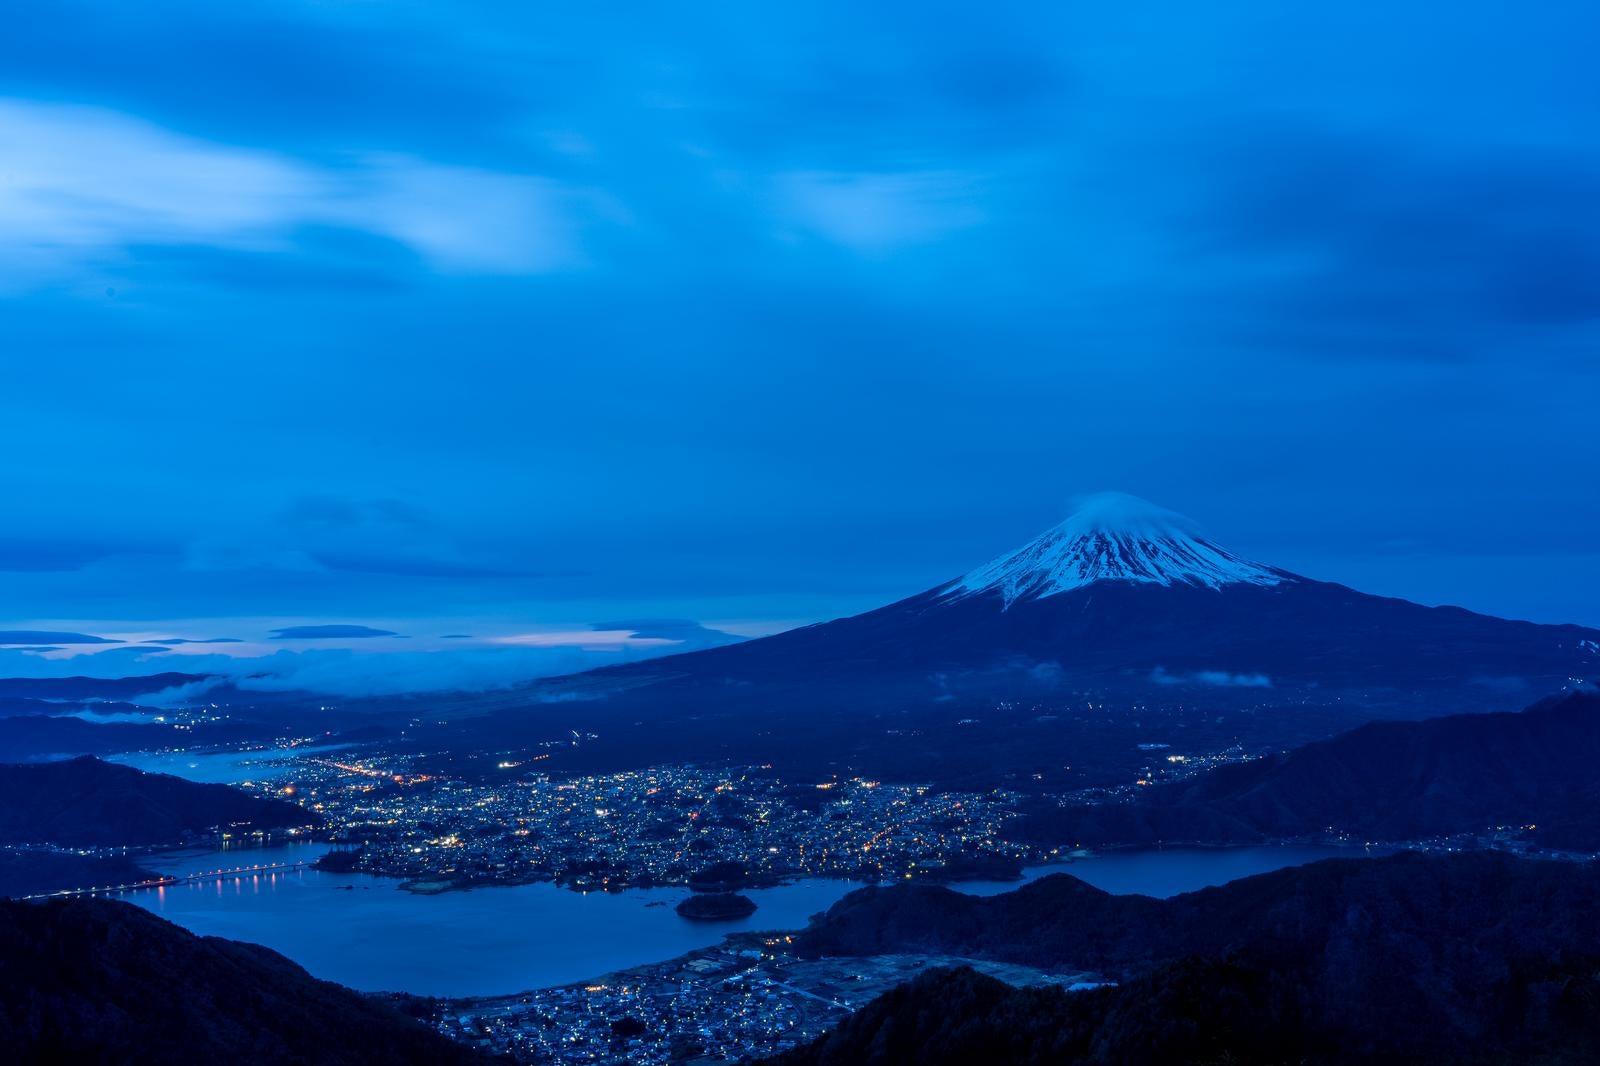 「富士の夜 街明かりと共に輝く山の姿」の写真